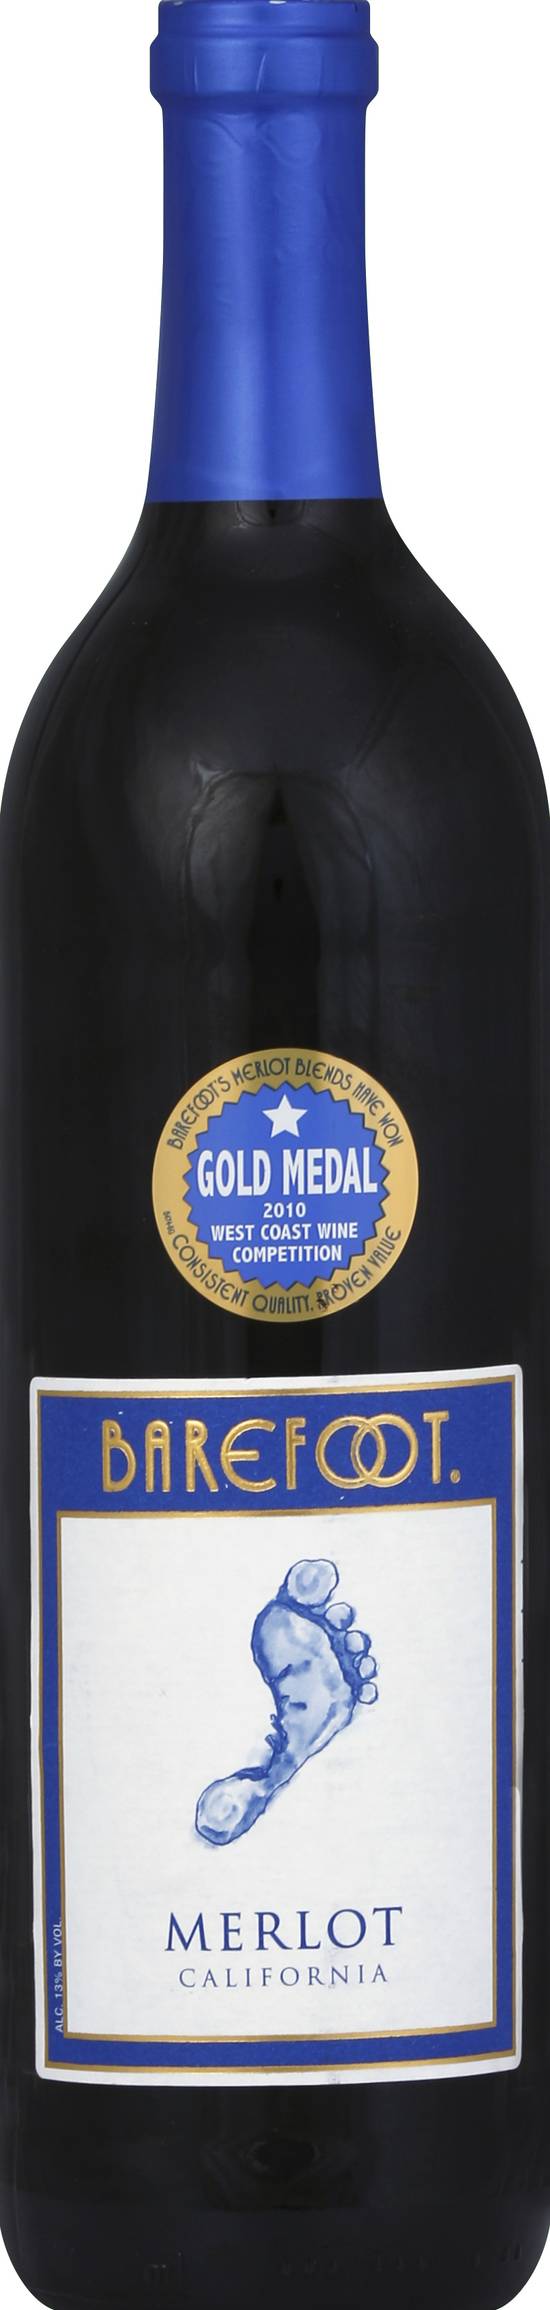 Barefoot California Merlot Wine 2010 (750 ml)